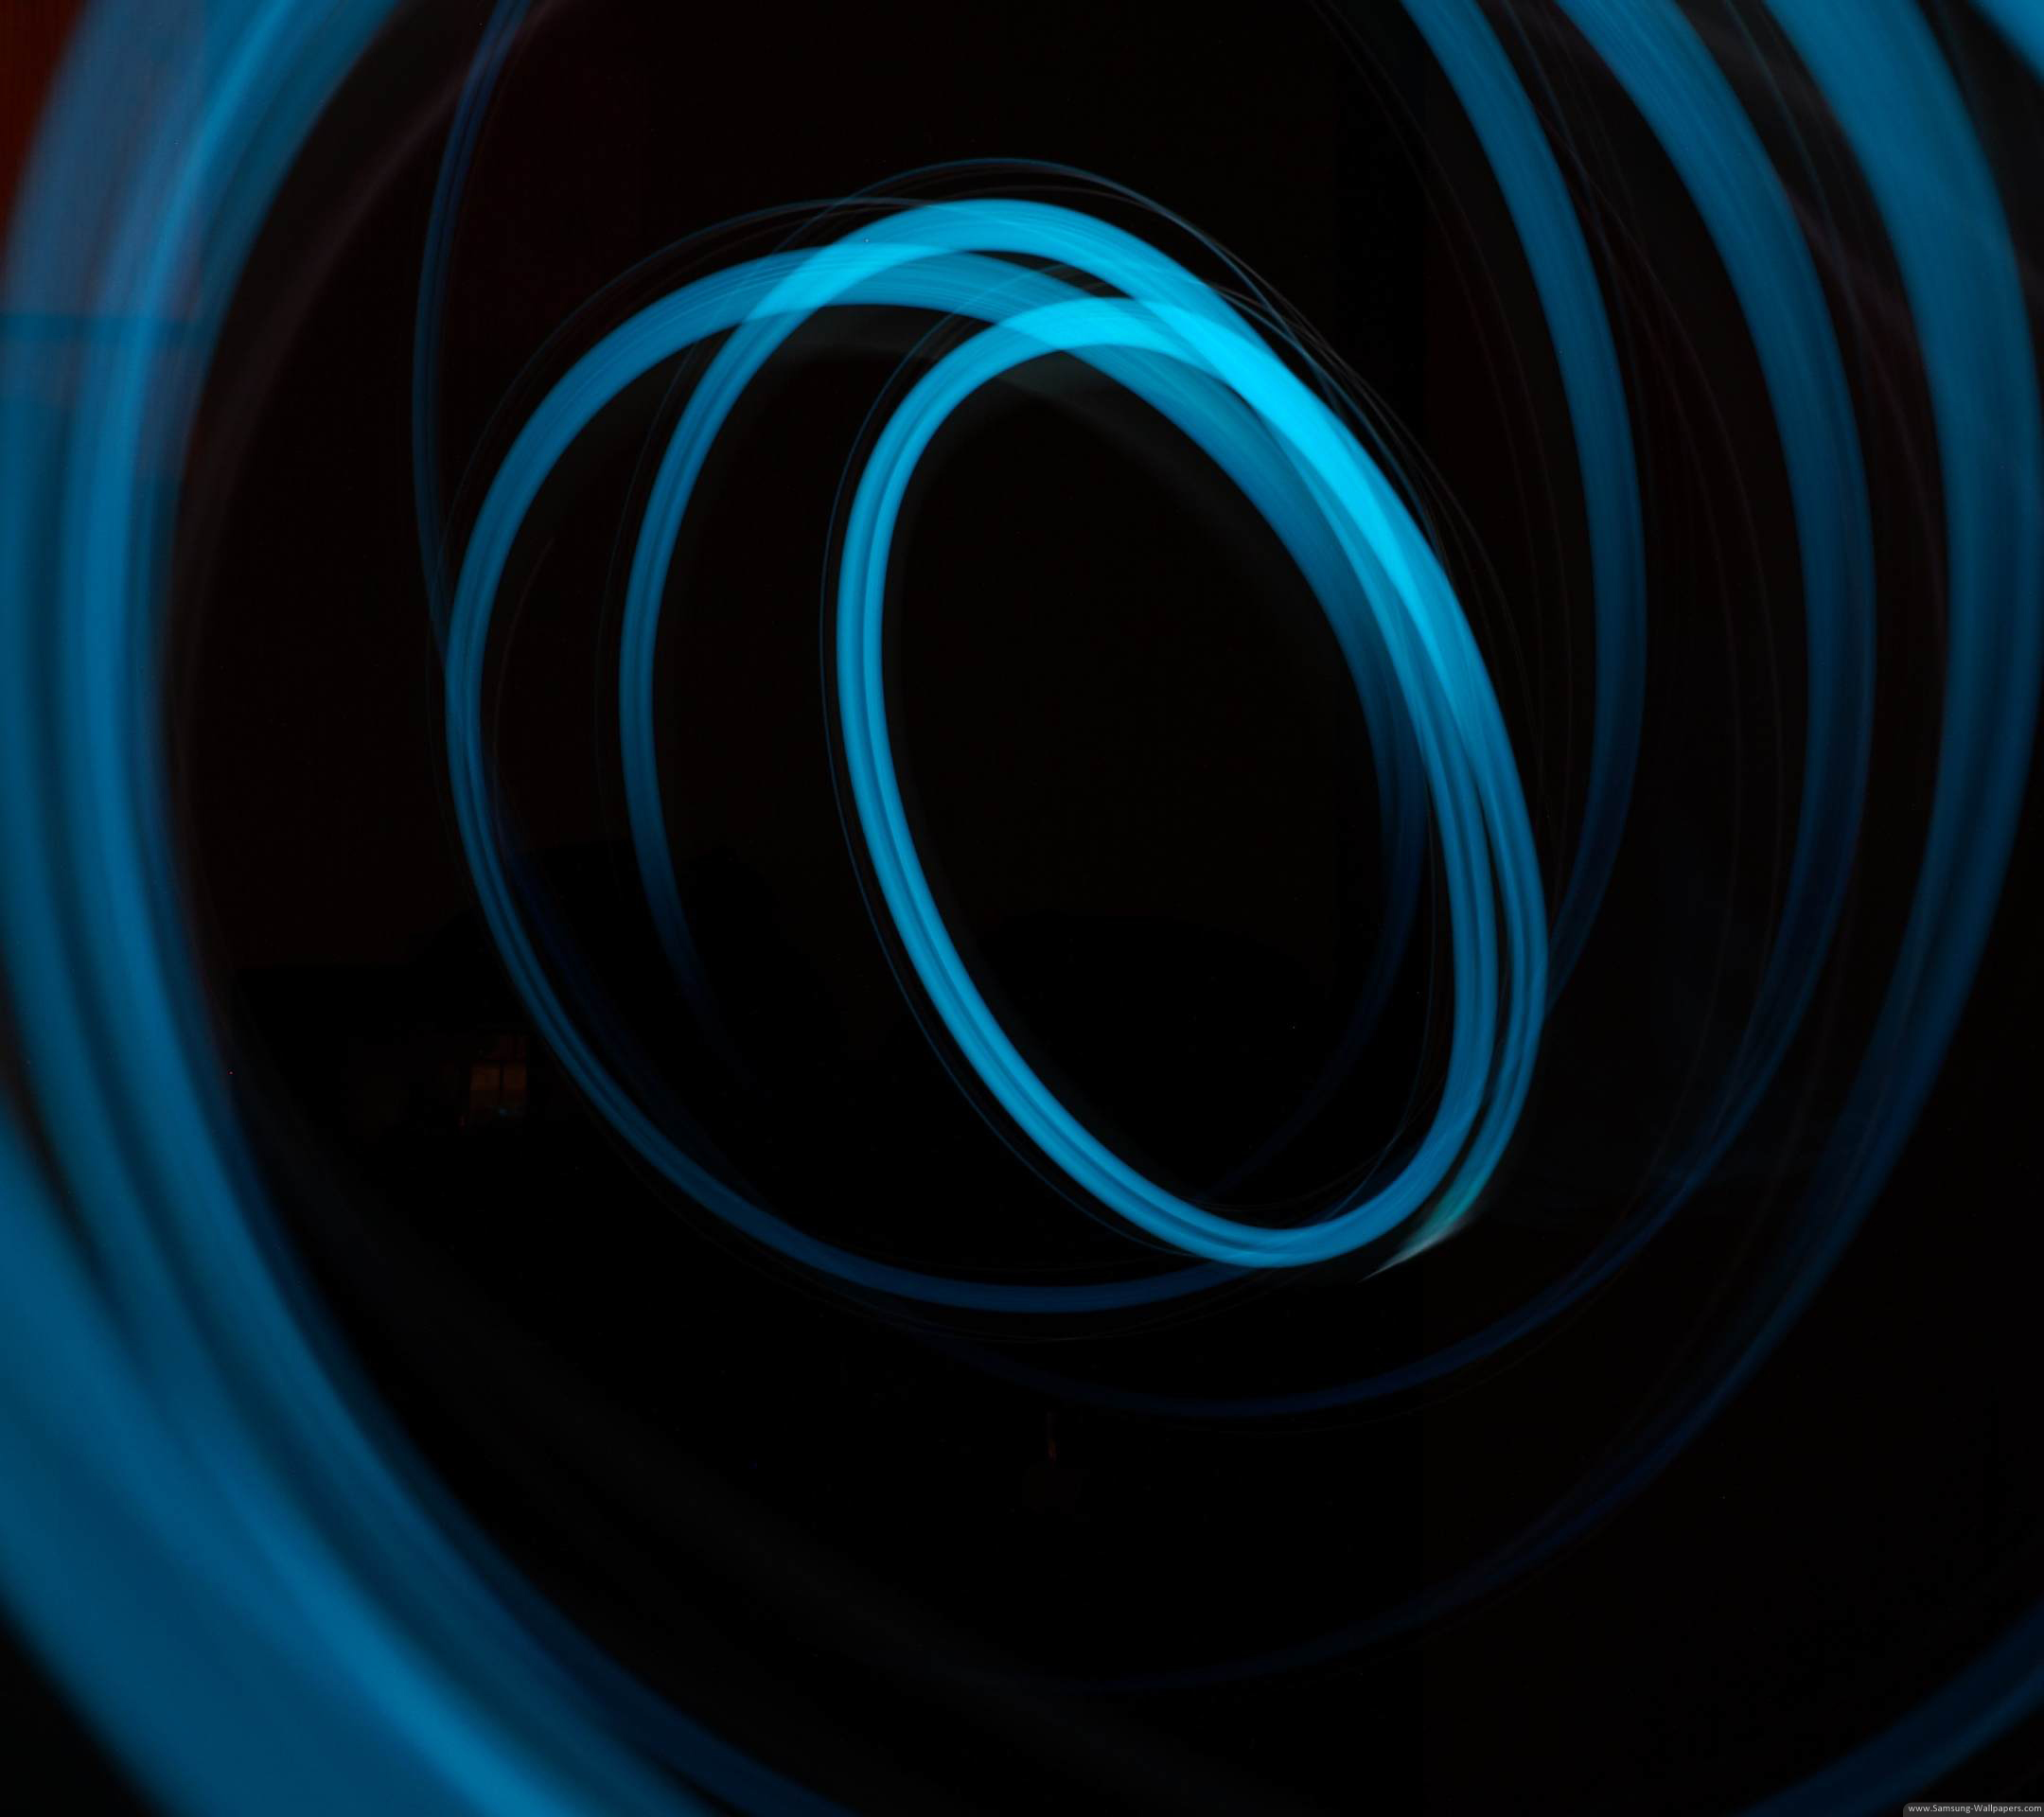 fond d'écran samsung j7,bleu,bleu électrique,l'eau,cercle,turquoise